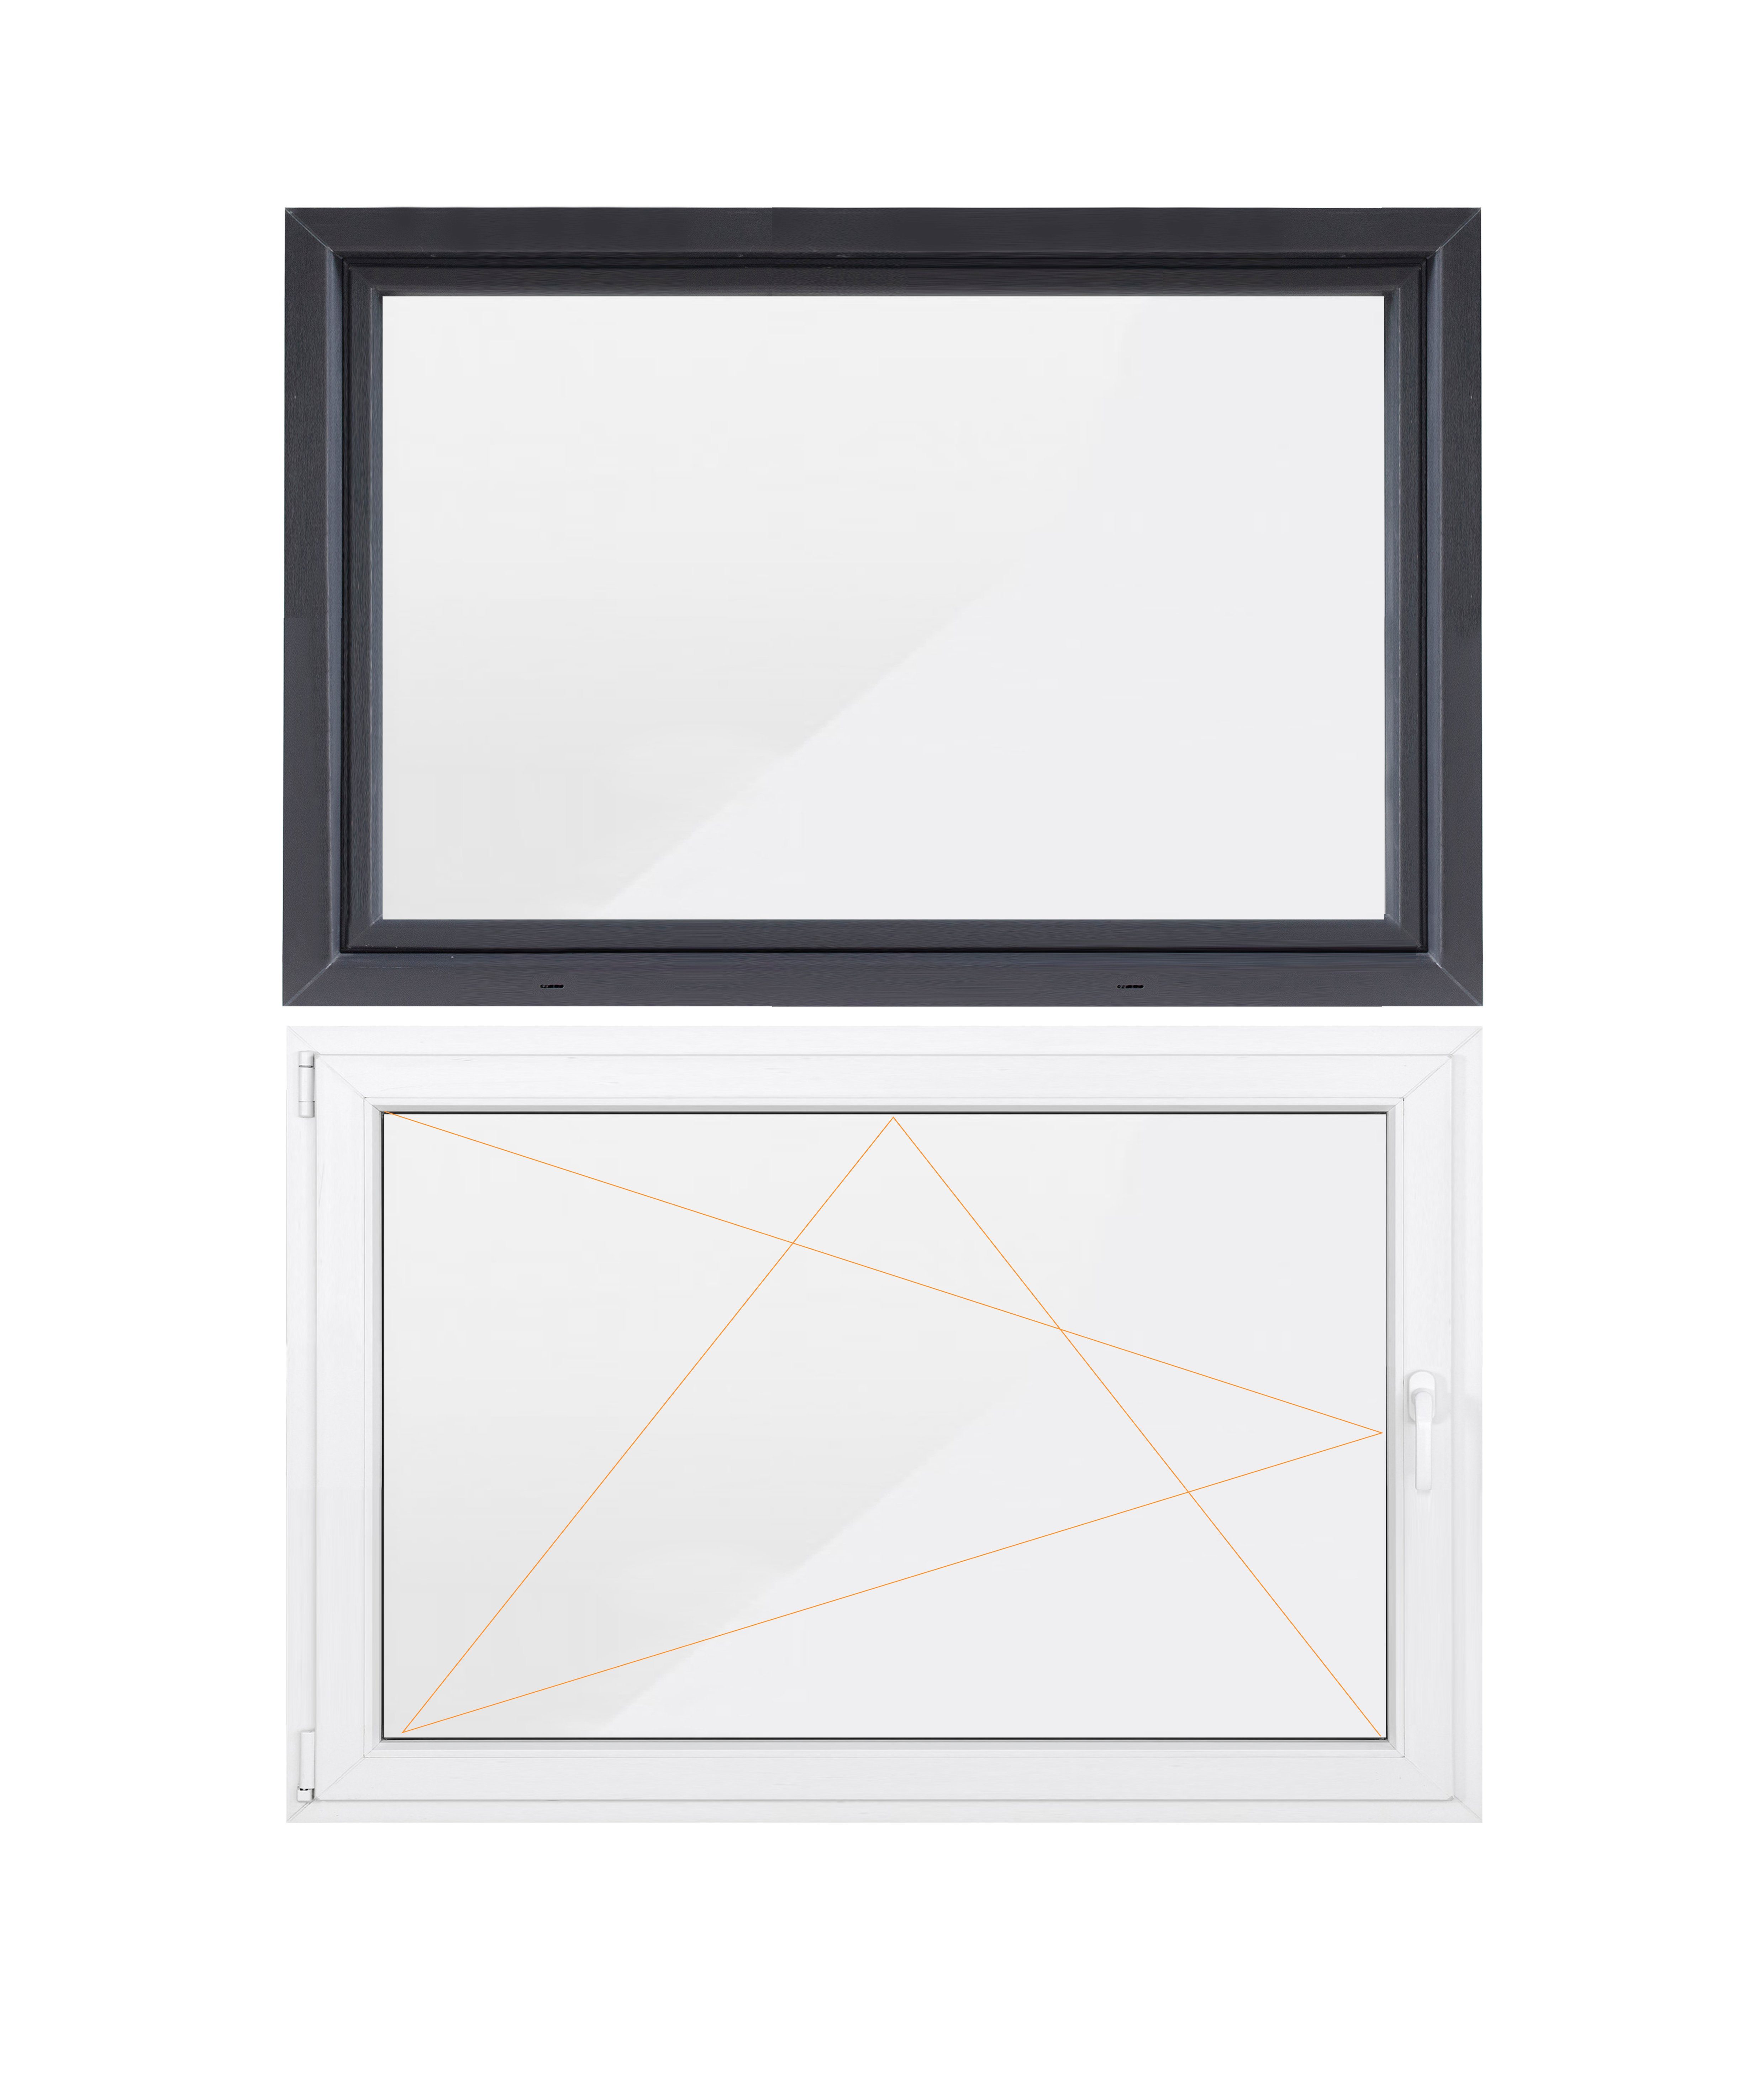 Kellerfenster Profil, SN 70 5-Kammer-Profil 800x400, weiß, Hochwertiges Sicherheitsbeschlag, RC2 GROUP mm (Set), Flügel, außen 1 anthrazit/innen DECO